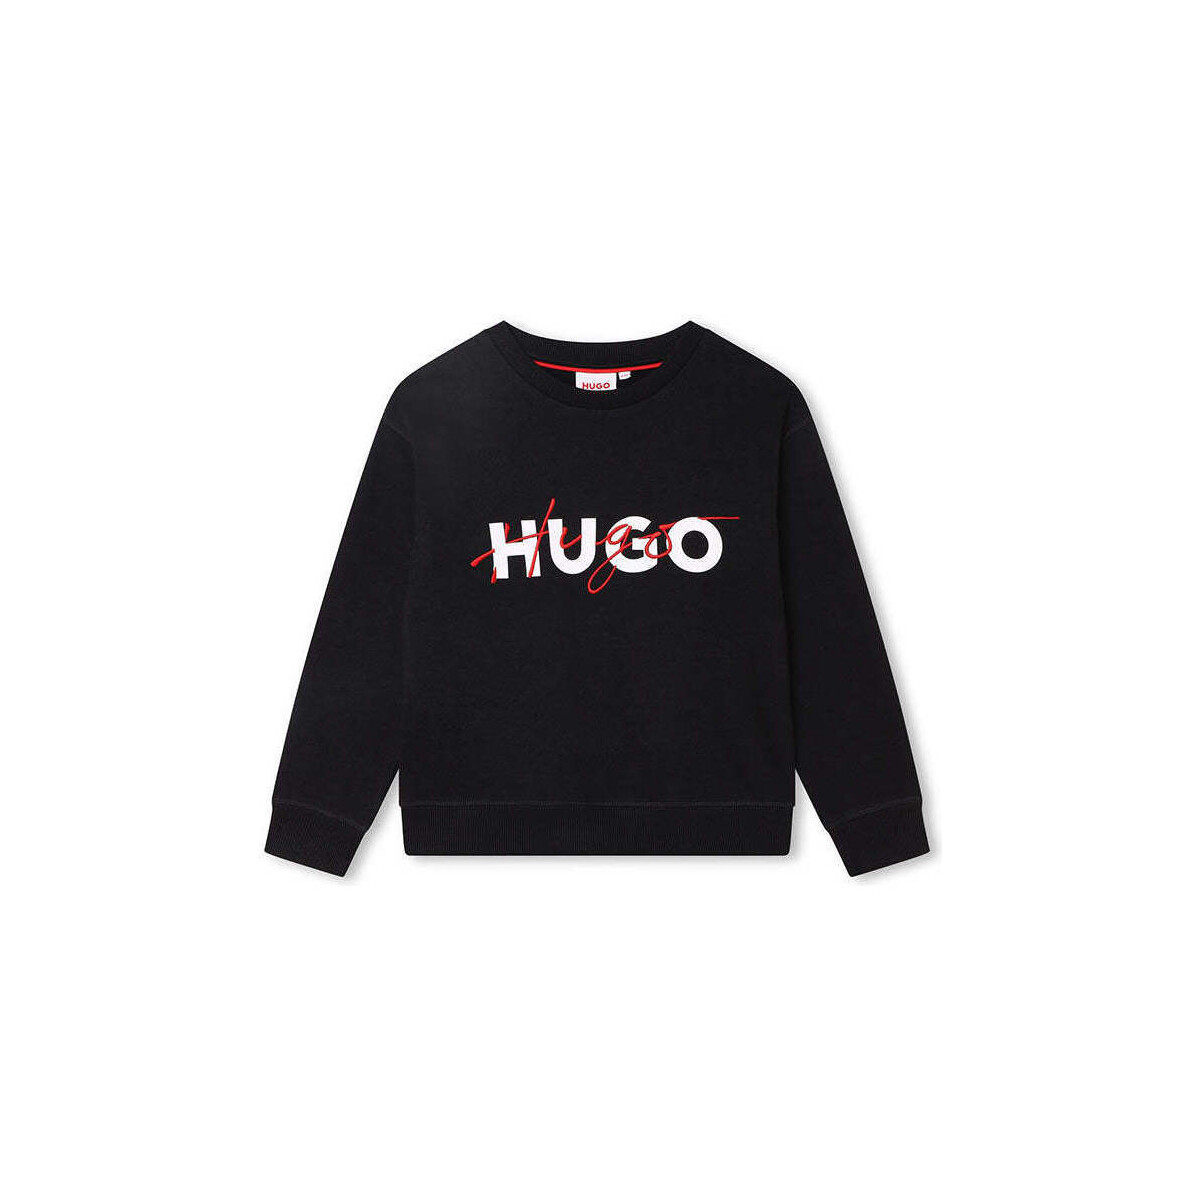 Textil Rapaz Sweats Hugo Boss Kids G25153-09B-2-19 Preto